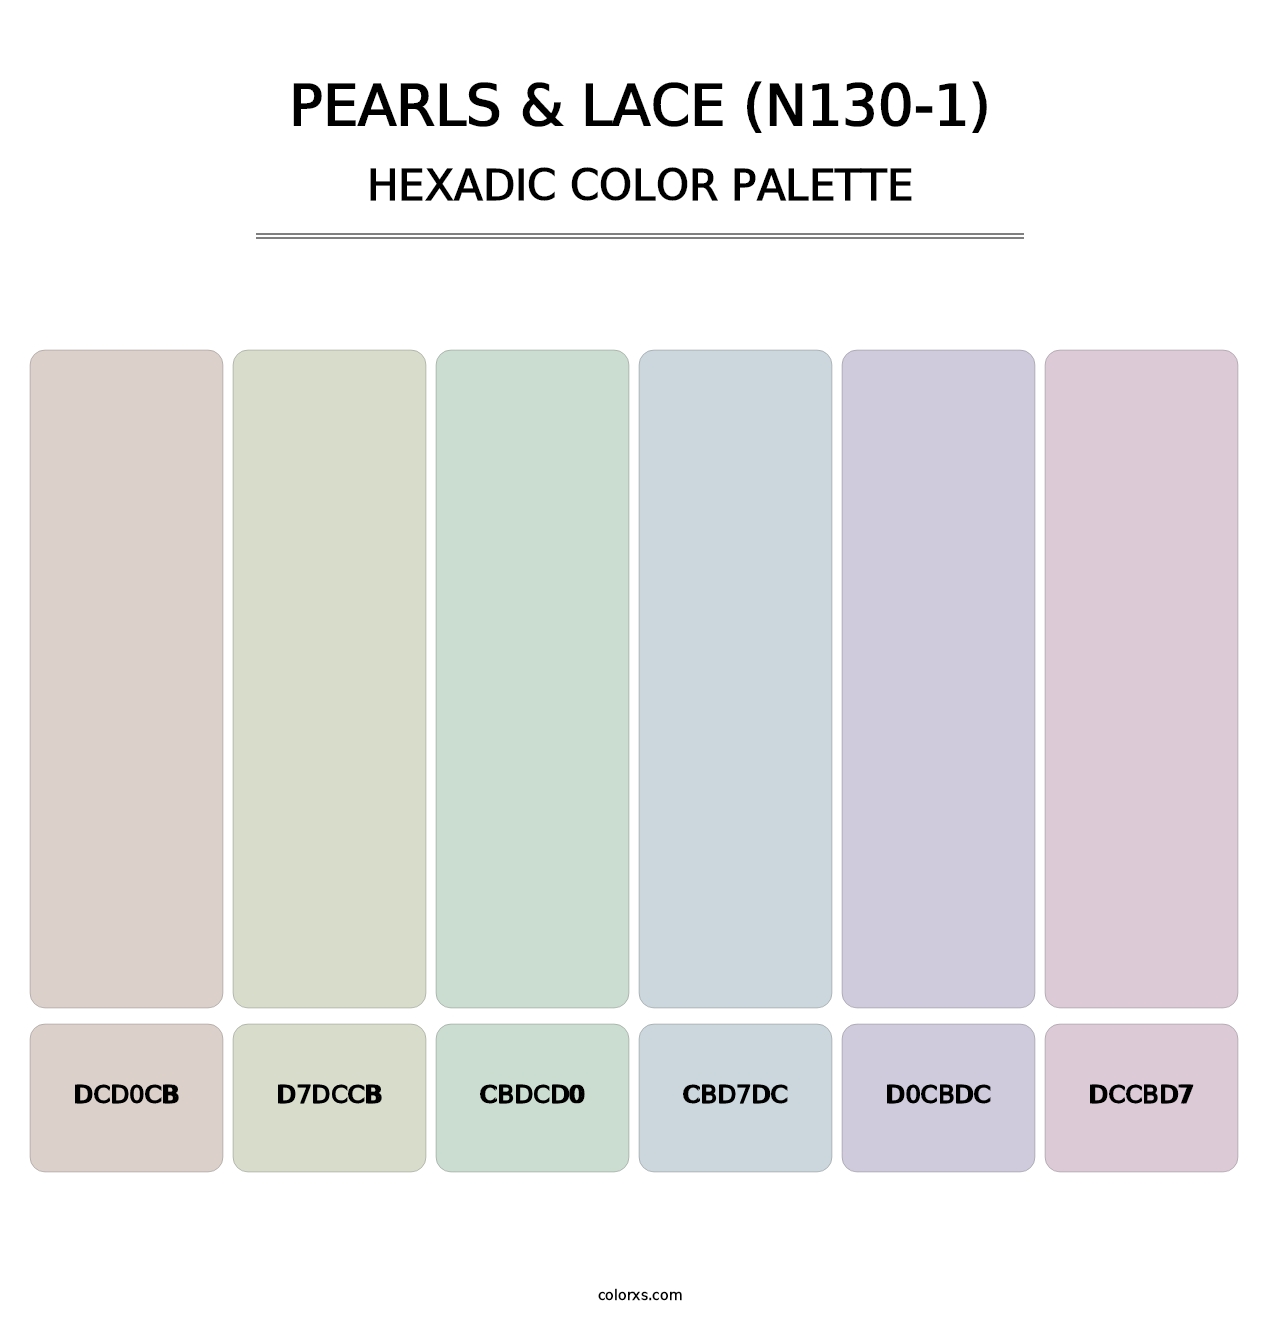 Pearls & Lace (N130-1) - Hexadic Color Palette